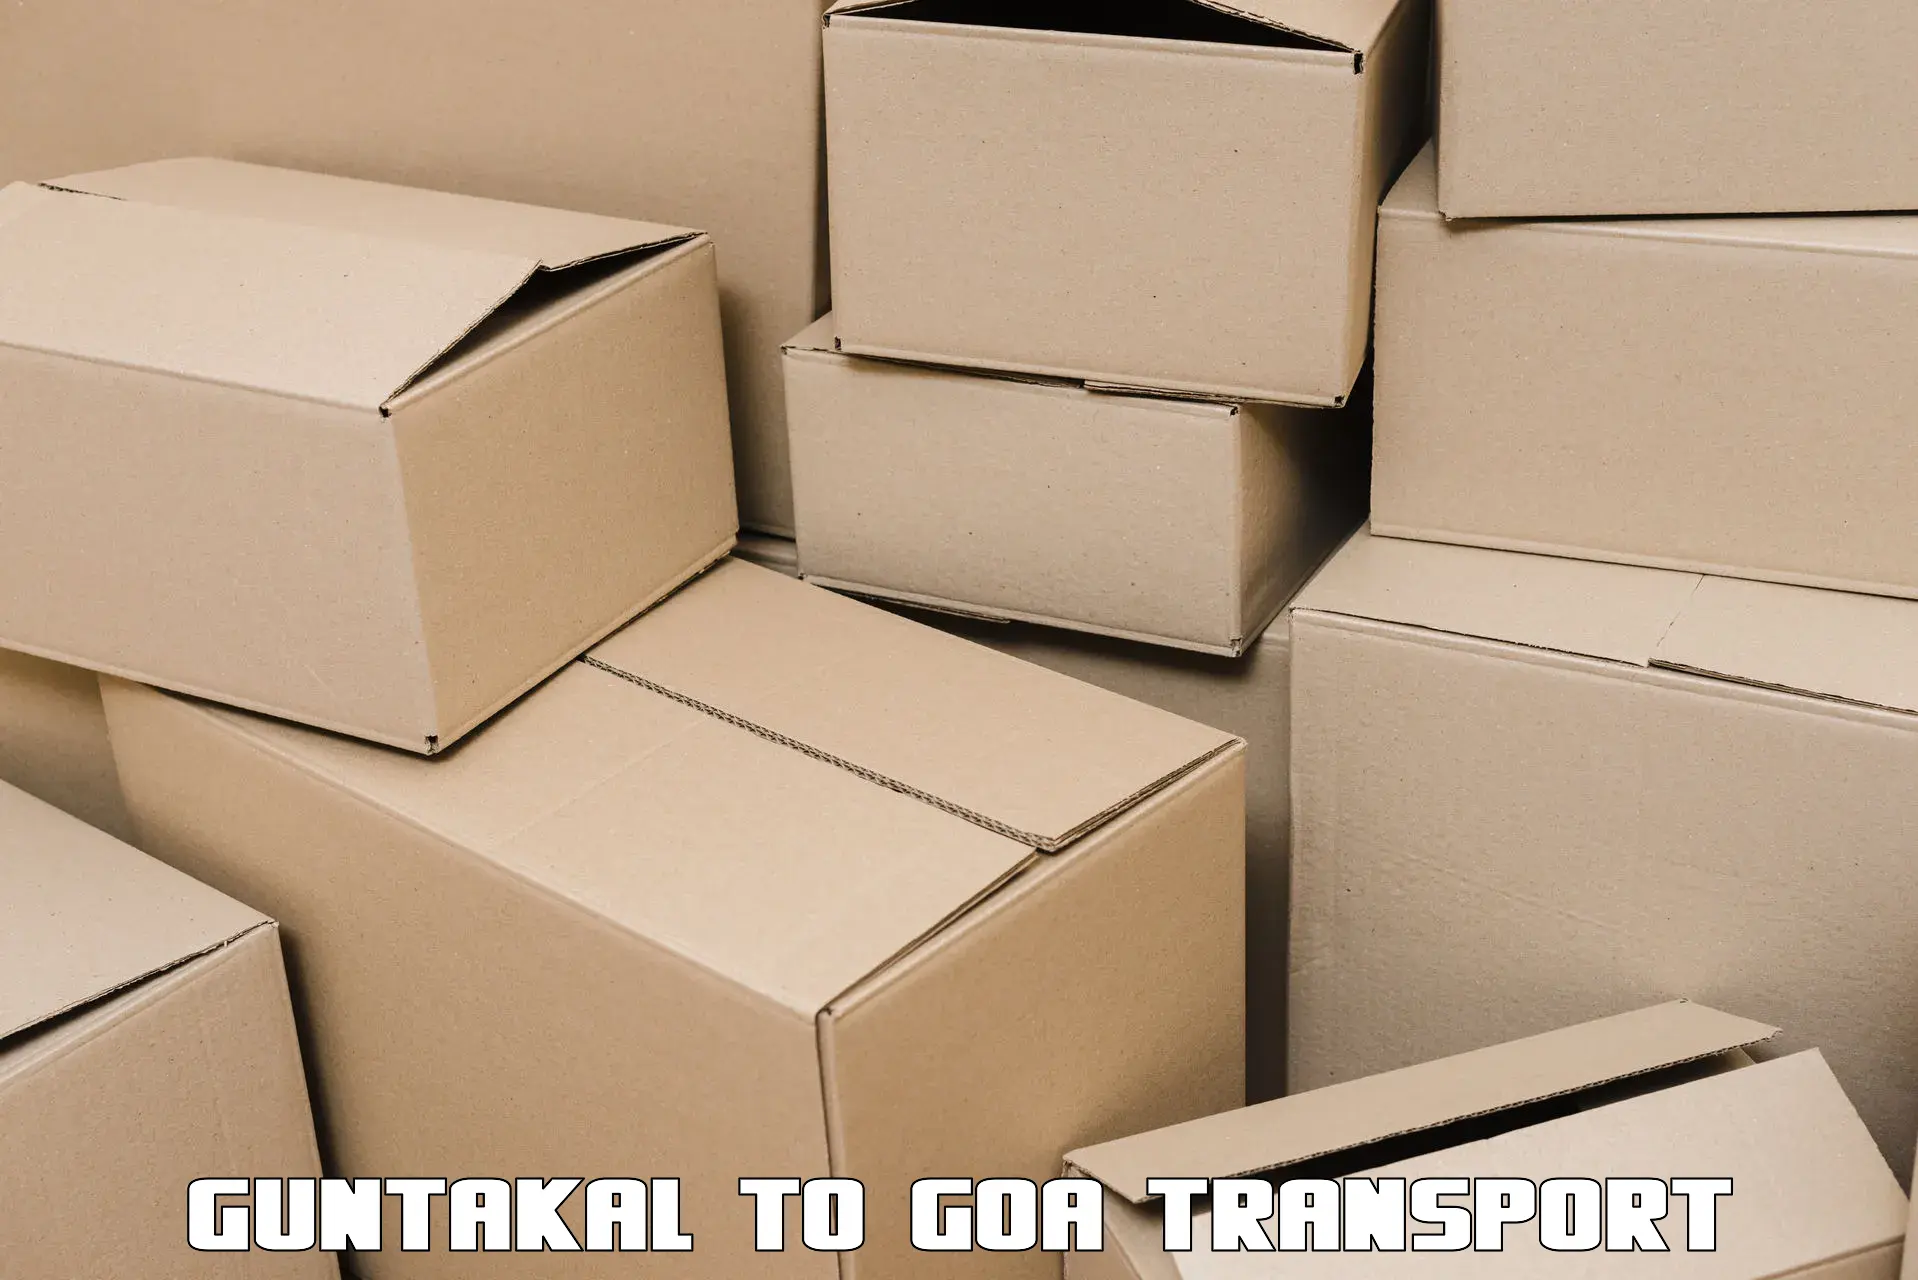 Scooty transport charges Guntakal to Sanvordem